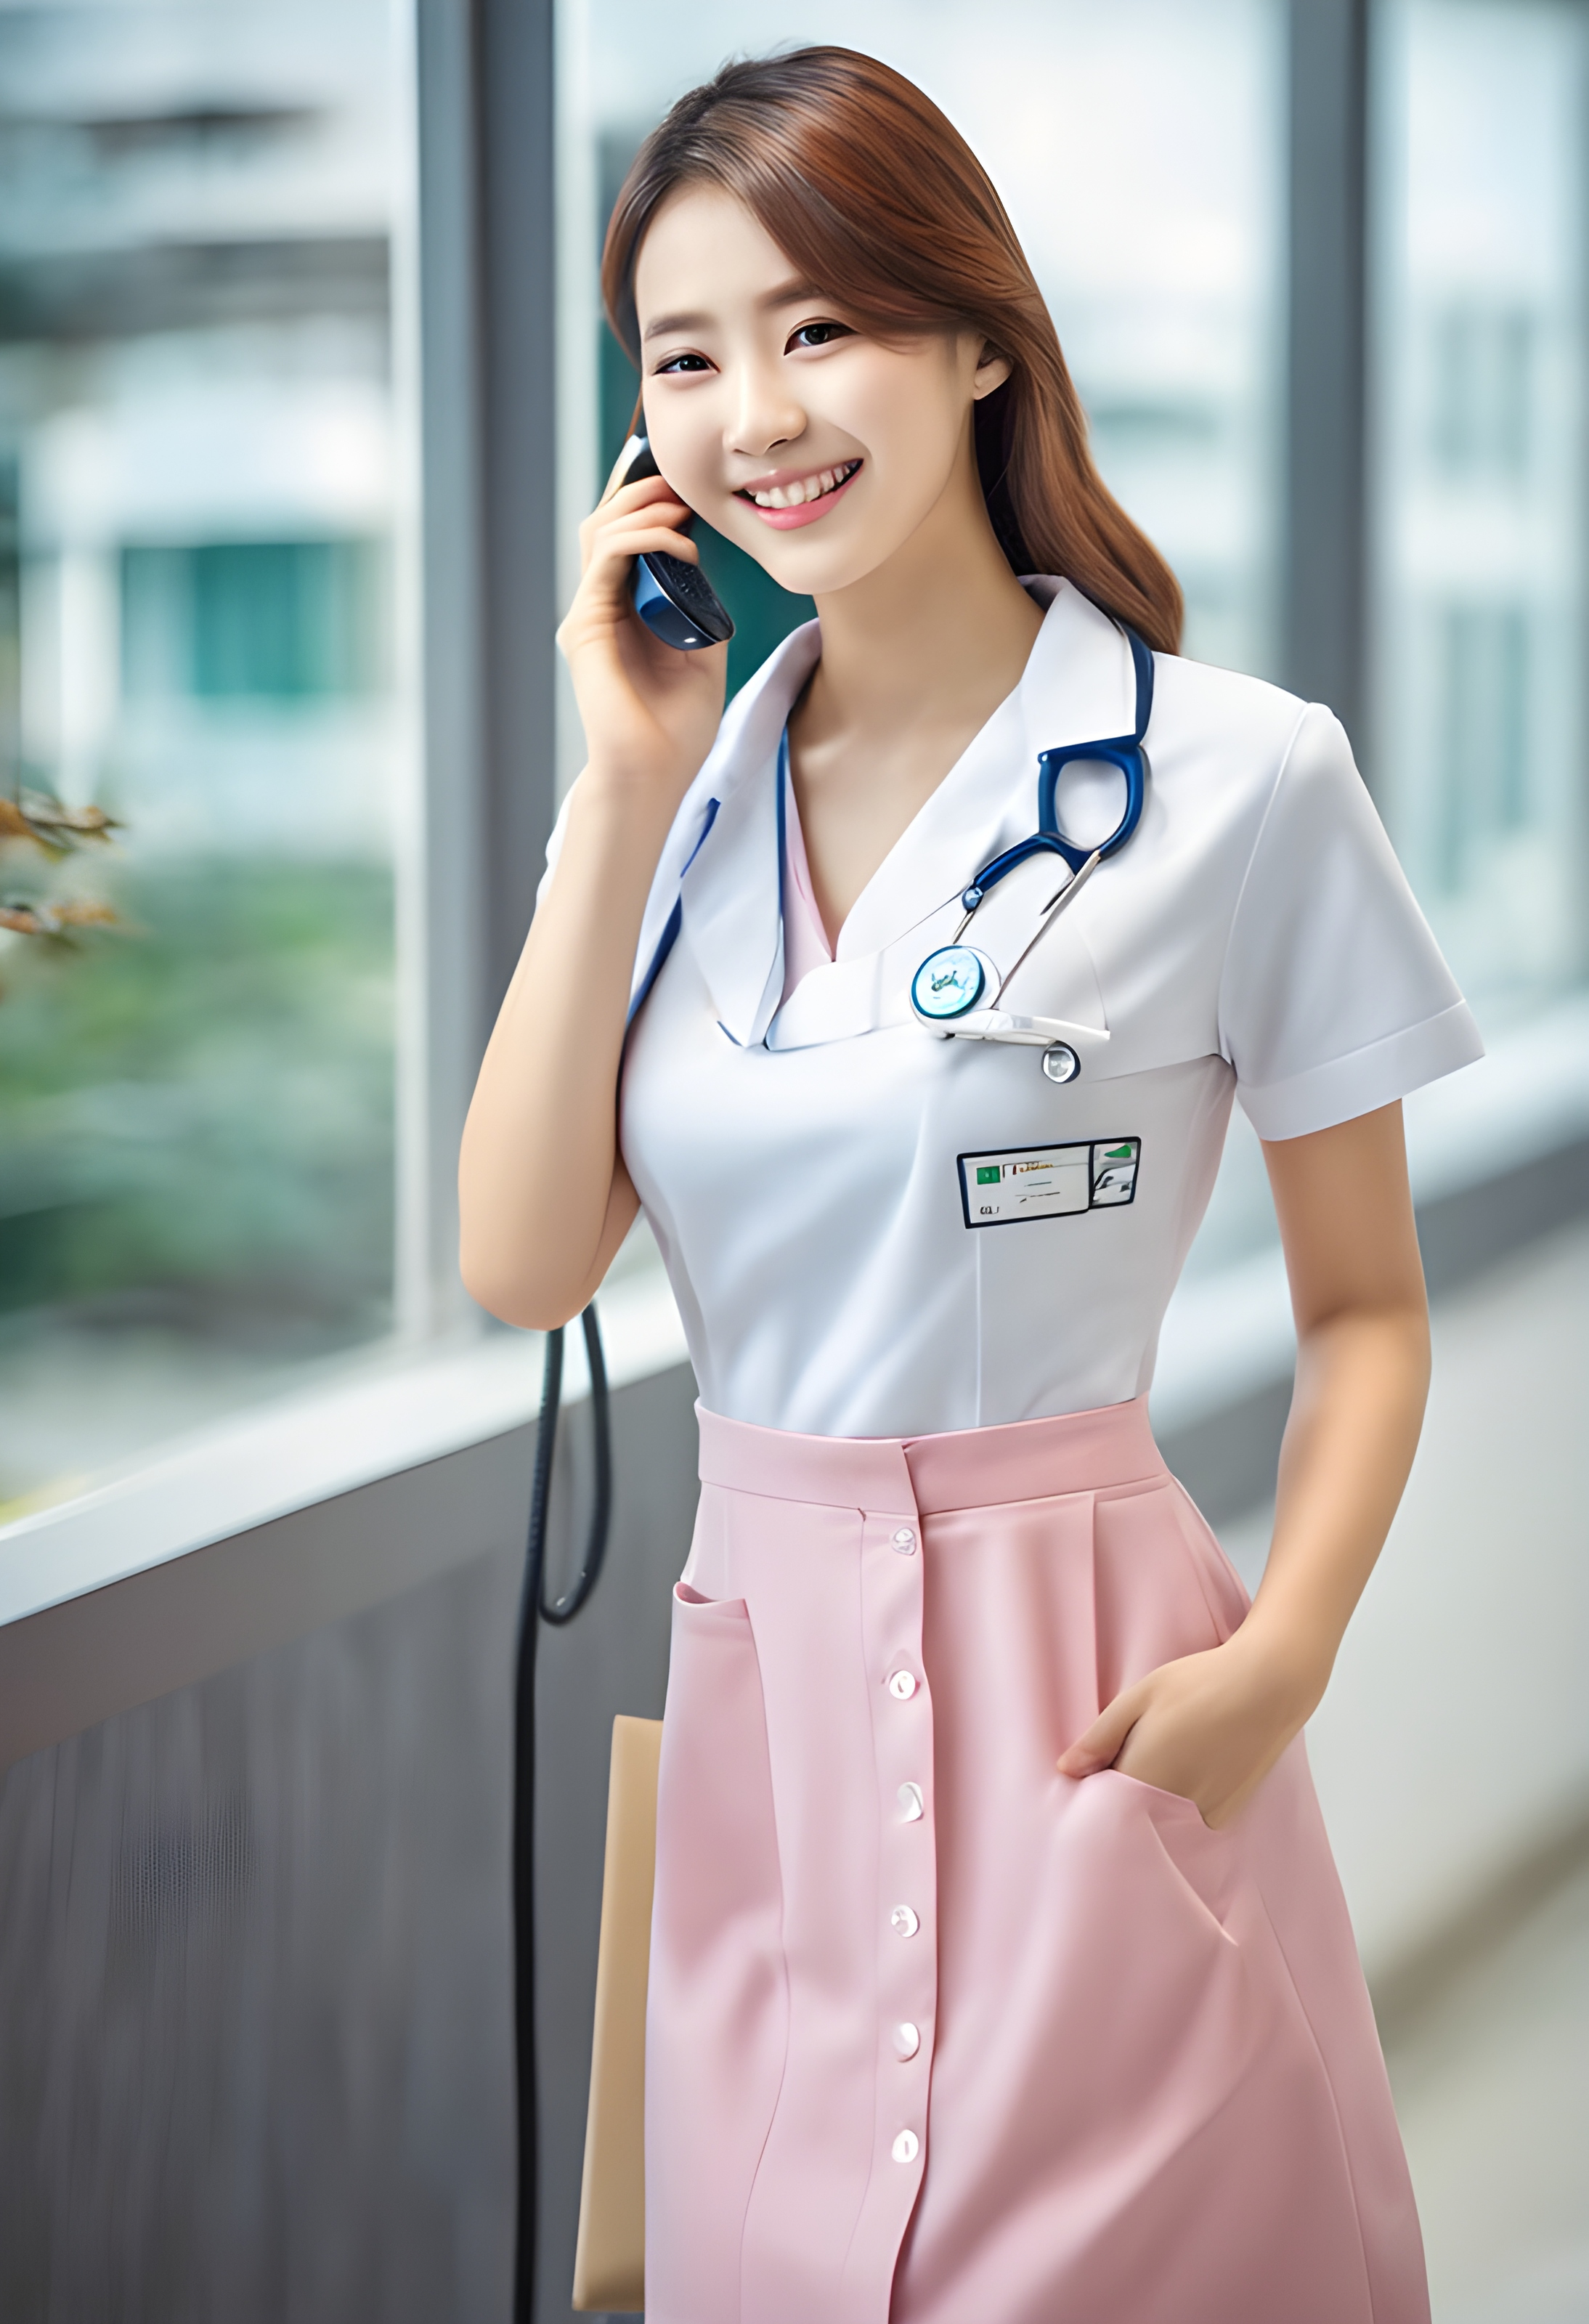 สร้างภาพนางพยาบาลเกาหลีสวย หุ่นดี เซ็กซี่ ยืนคุยโทรศัพท์ ยิ้มบางๆ ในโรงพยาบาลช่วงหน้าร้อน ใส่ชุดรัดรูปคอวีลึก เซนเซอร์ Super 35 HDR และใช้ Gen 5 Color Science ความละเอียดสูง